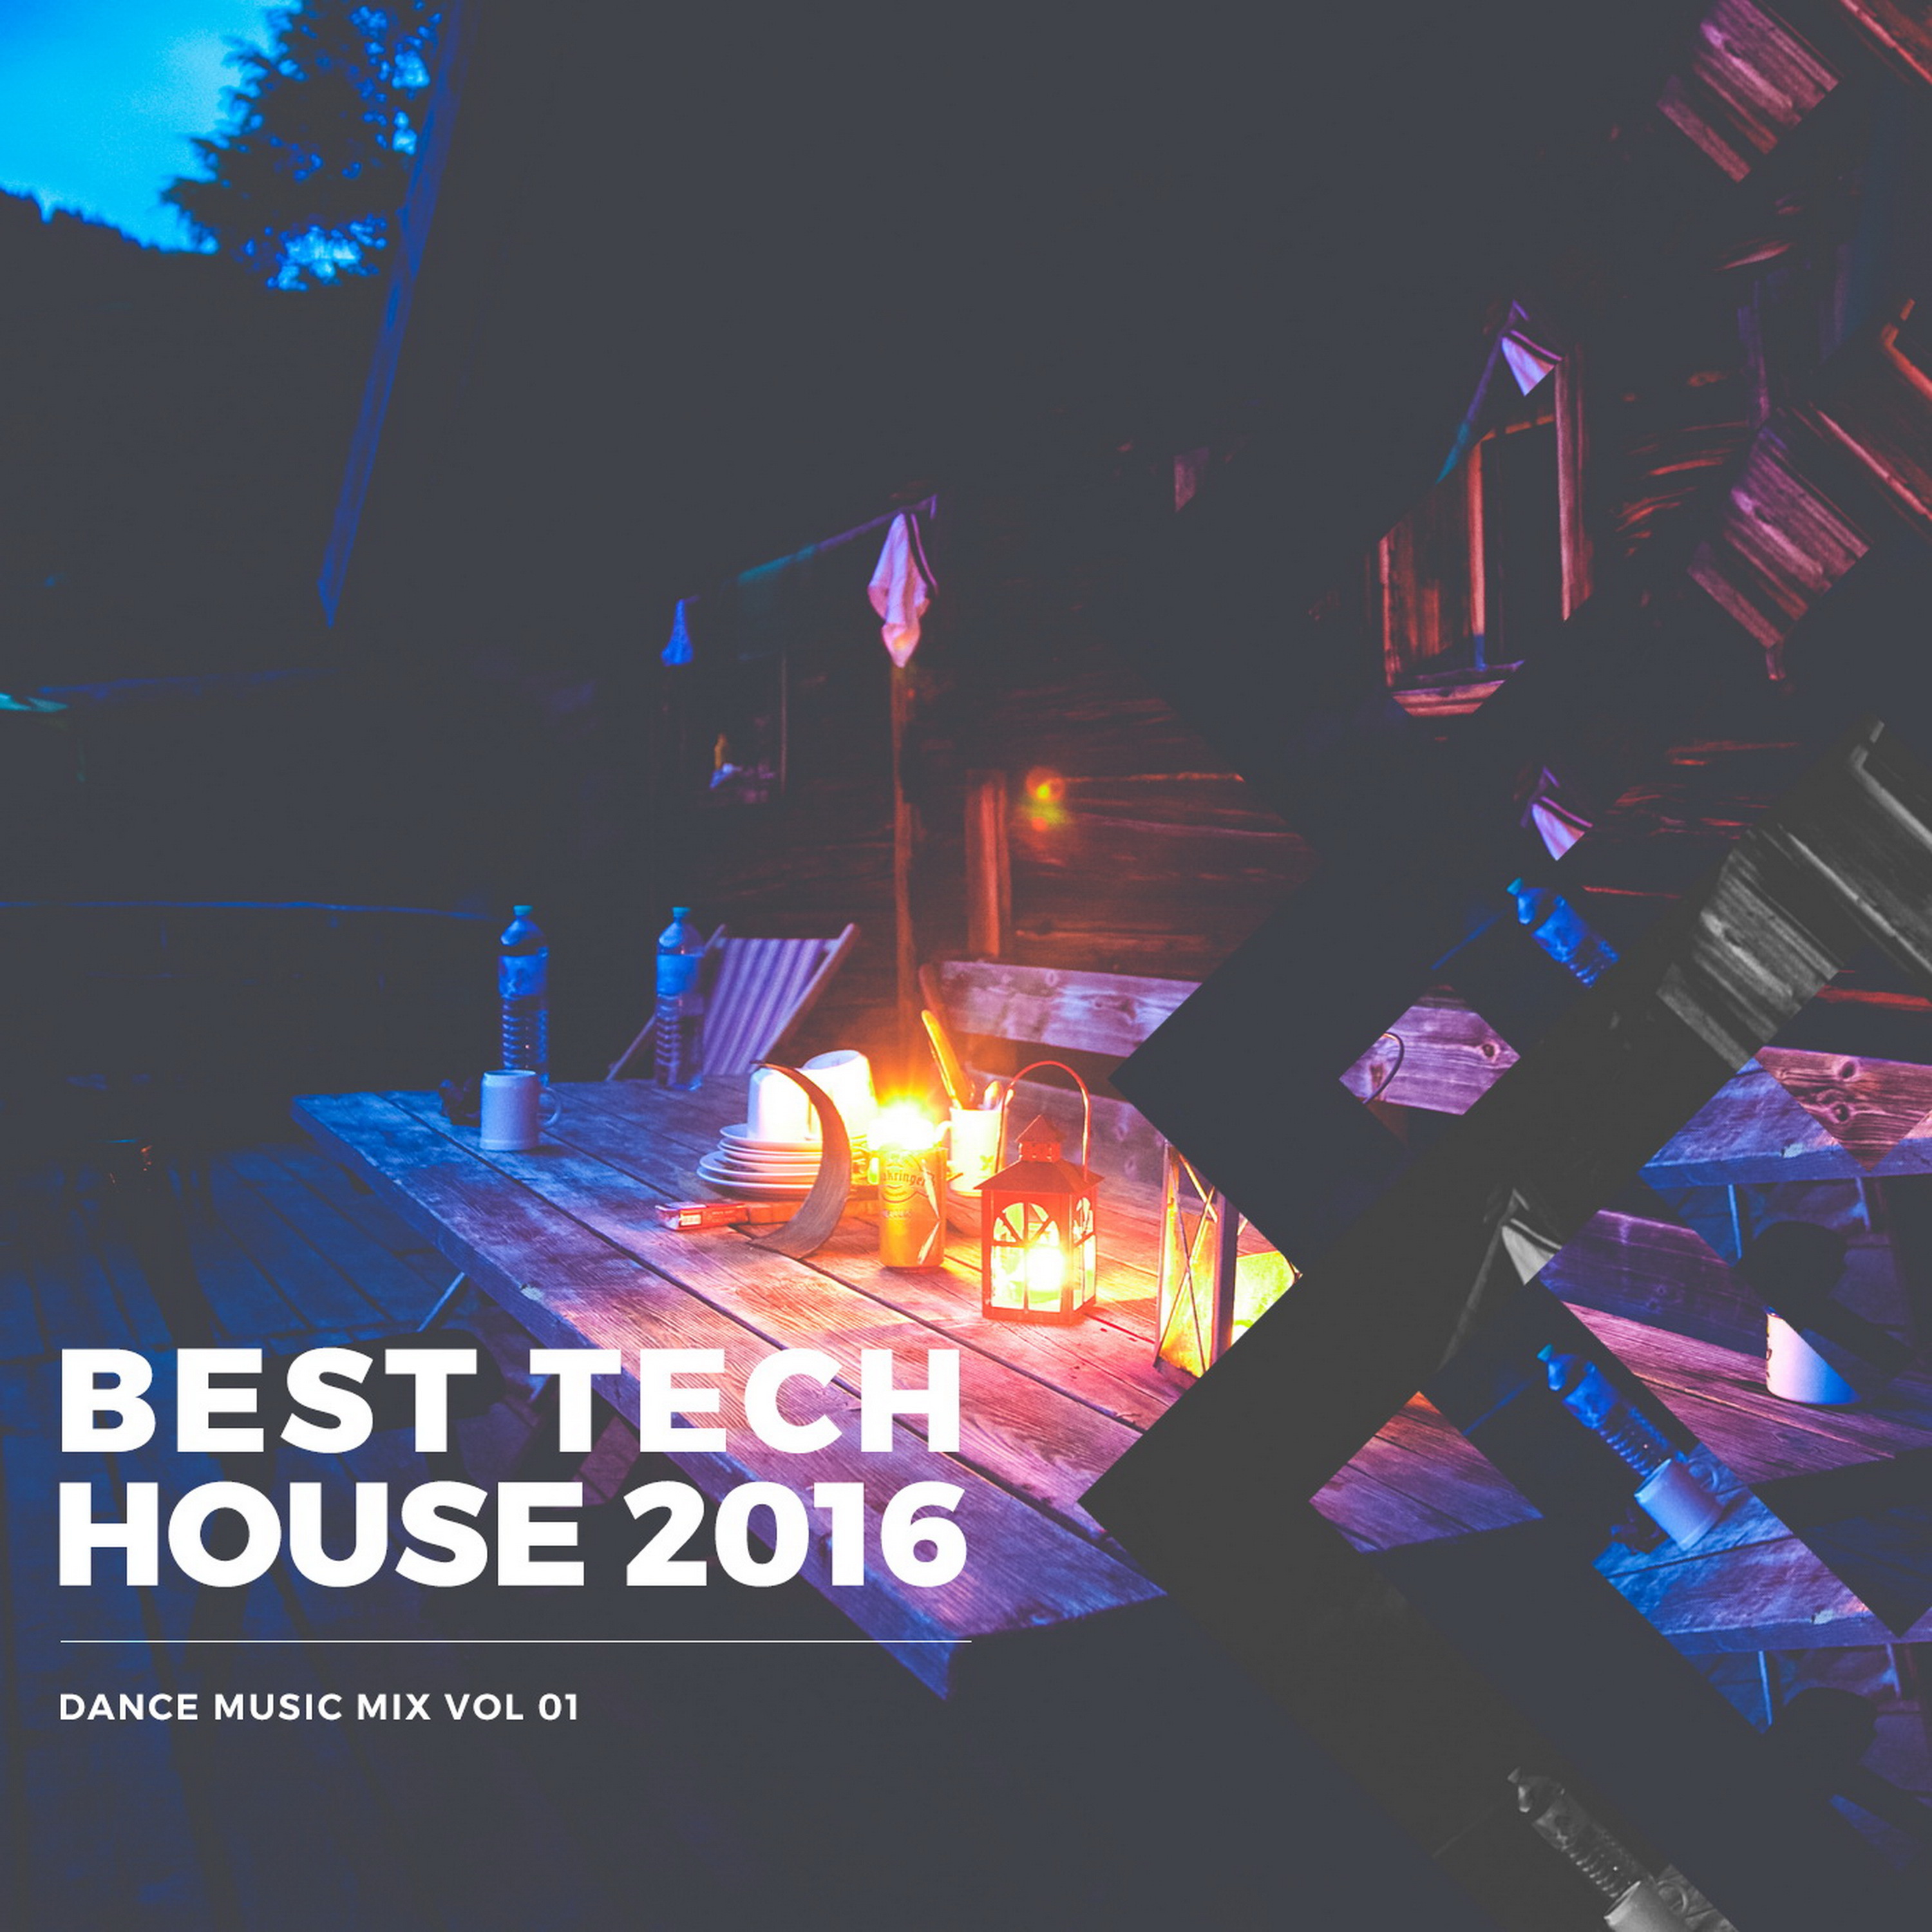 Best Tech House 2016 Dance Music Mix, Vol. 01